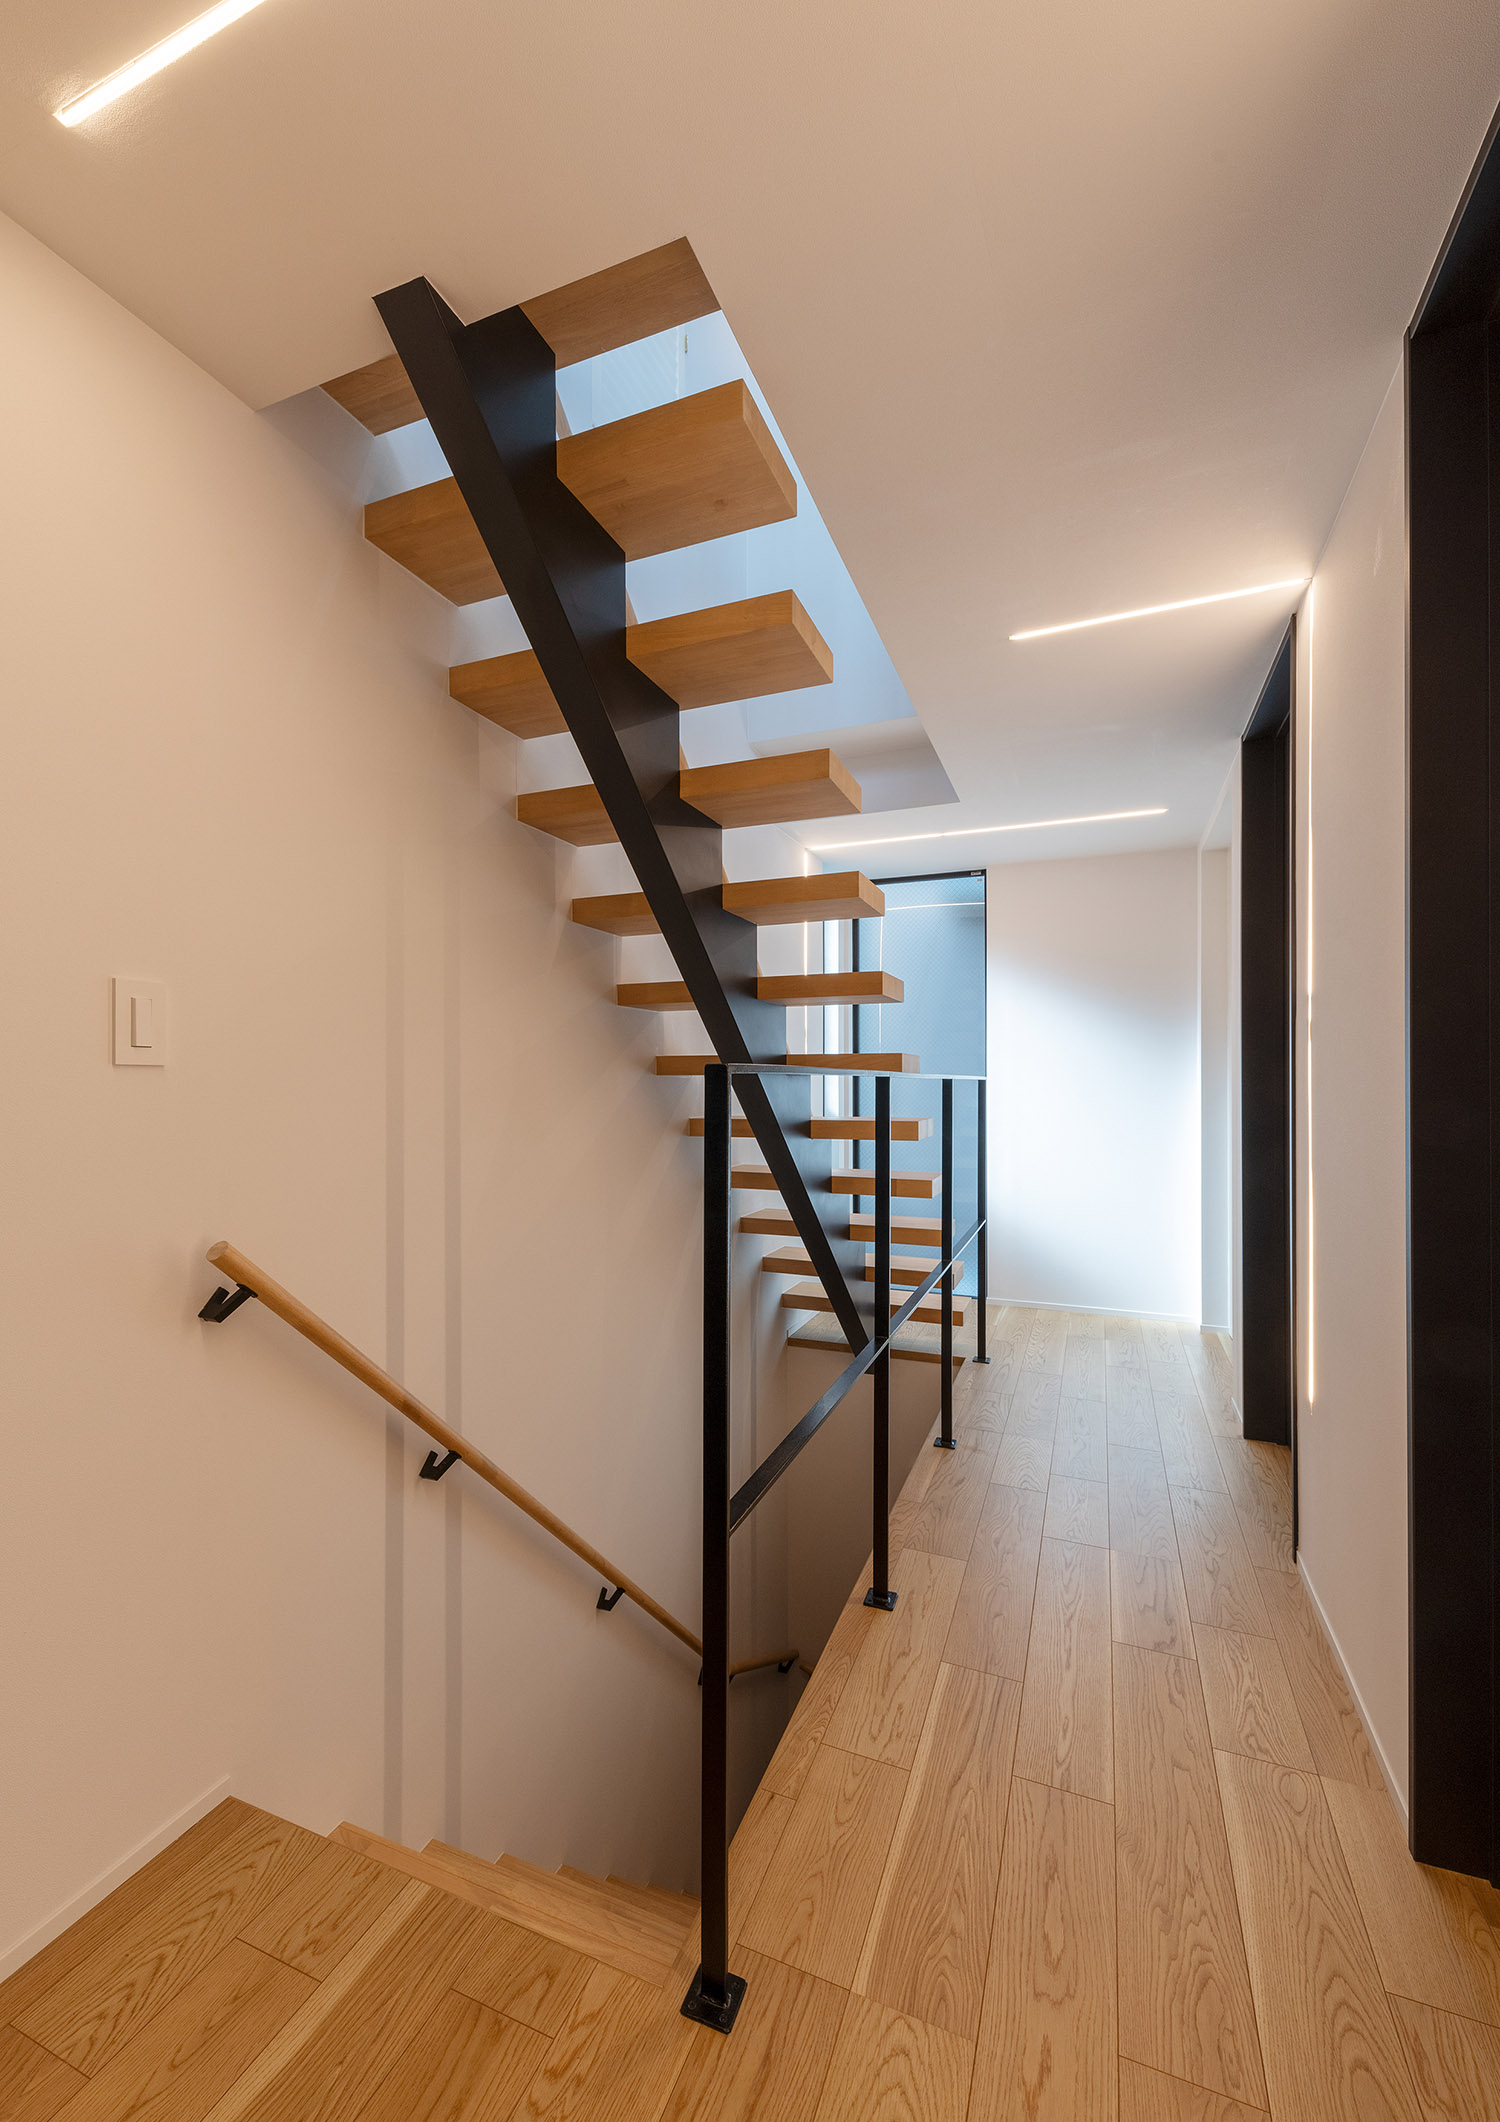 吹き抜けの階段室のそばにある、黒いアイアンの手すりを取り付けた廊下・デザイン住宅